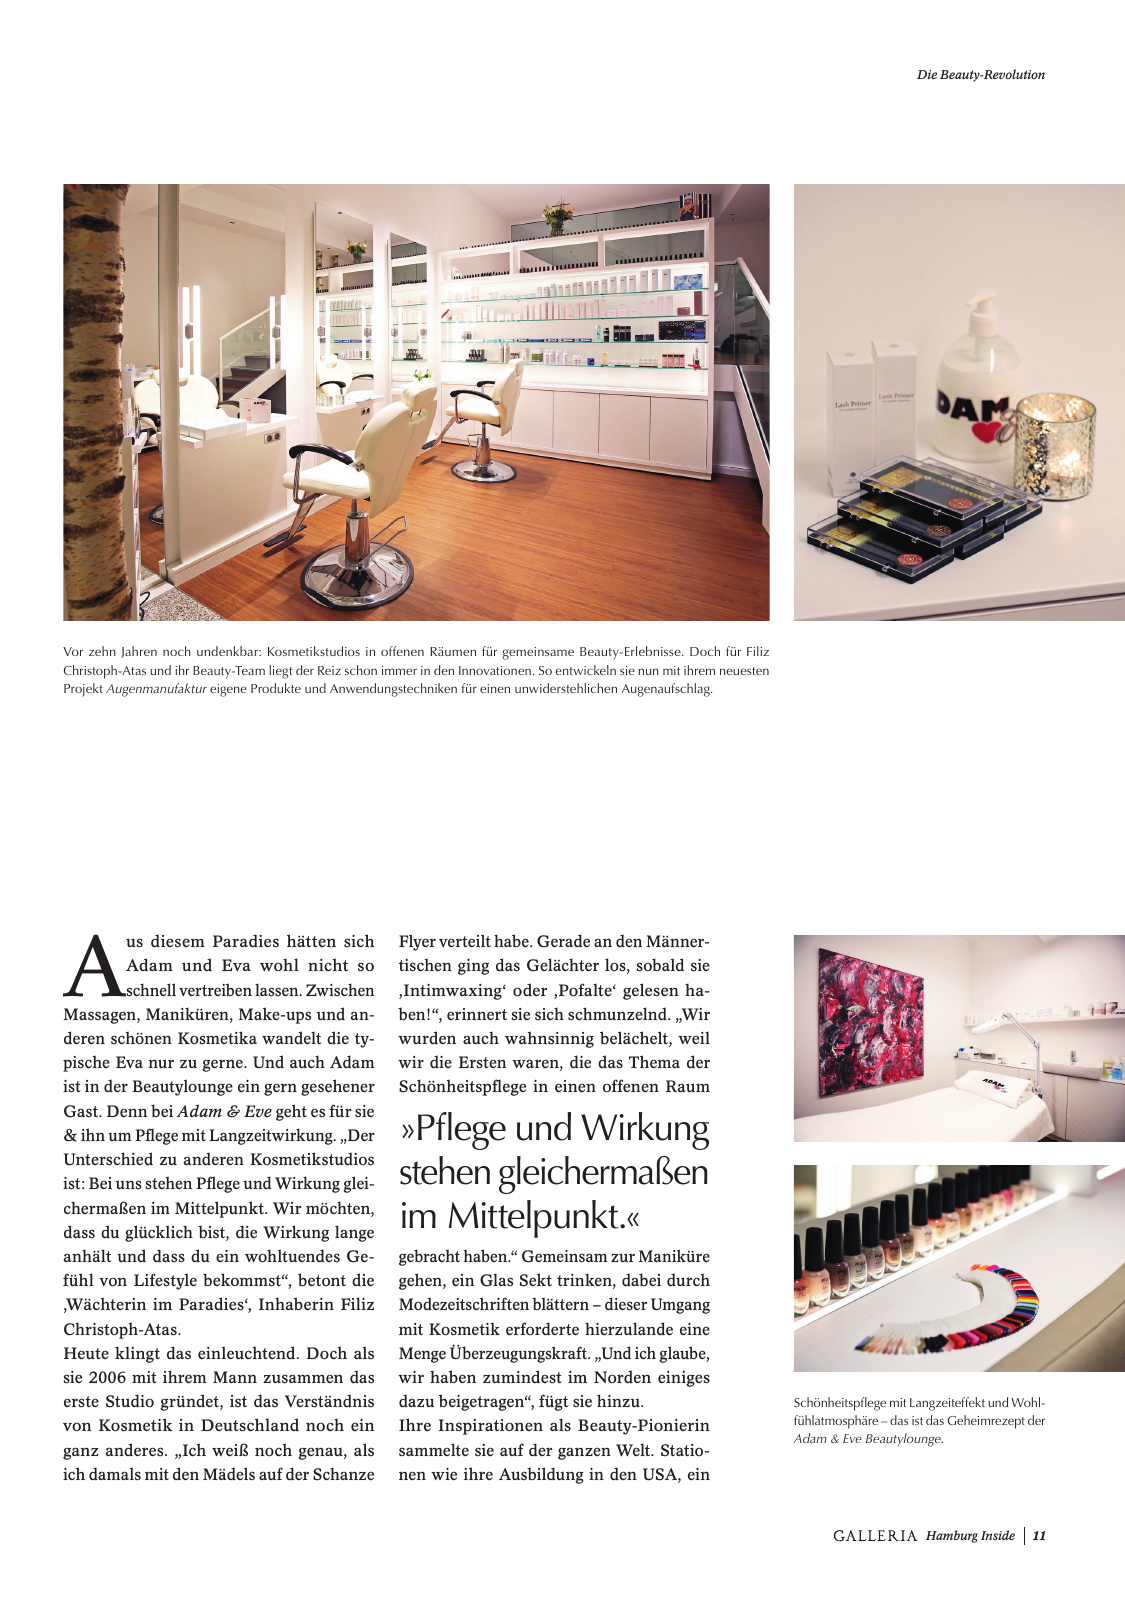 Vorschau GALLERIA Magazin Hamburg Inside 2 Seite 11